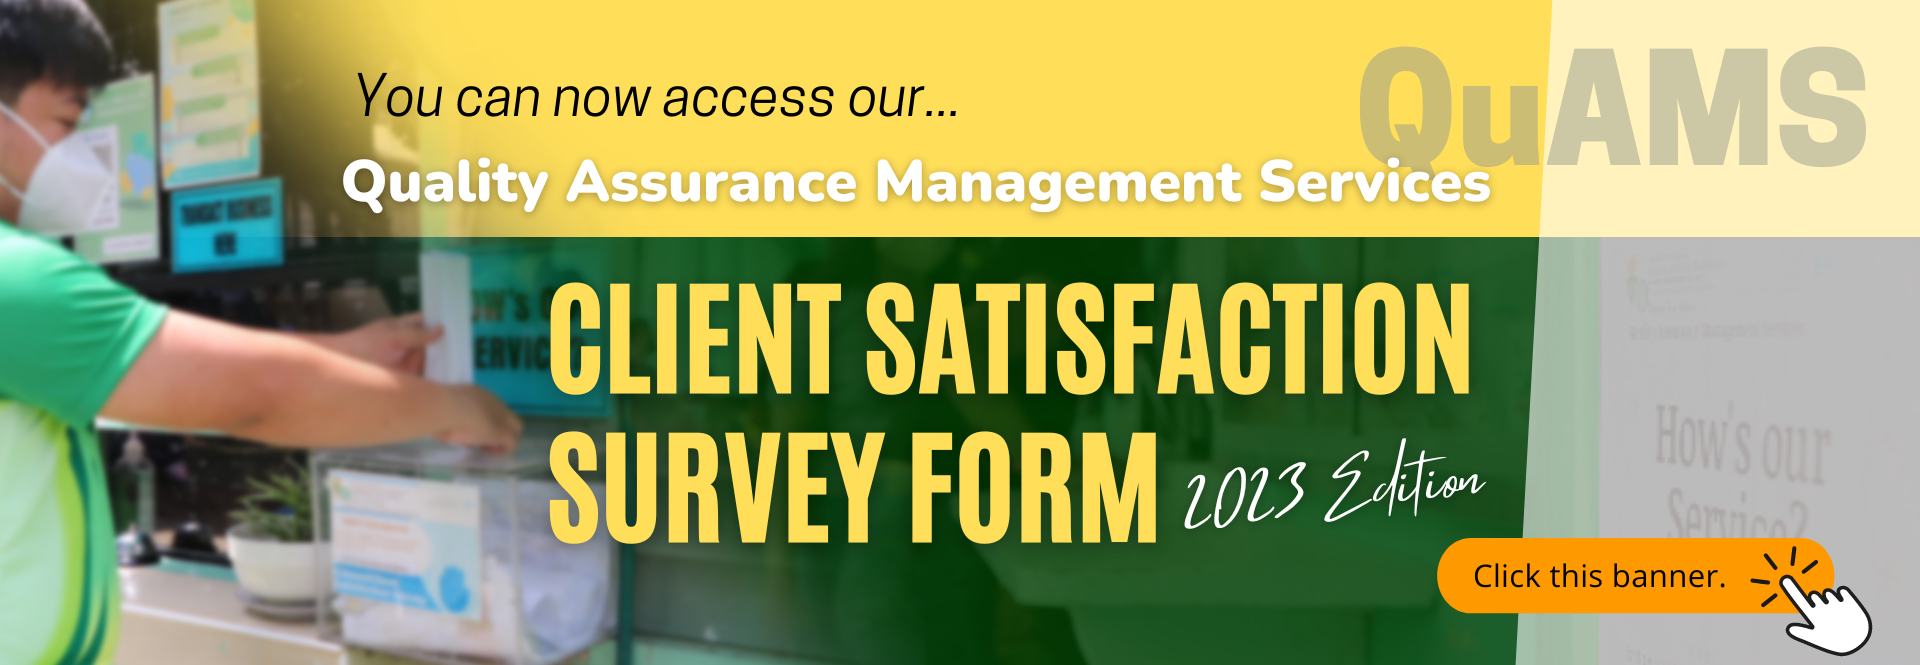 Client Satisfaction Survey Form banner